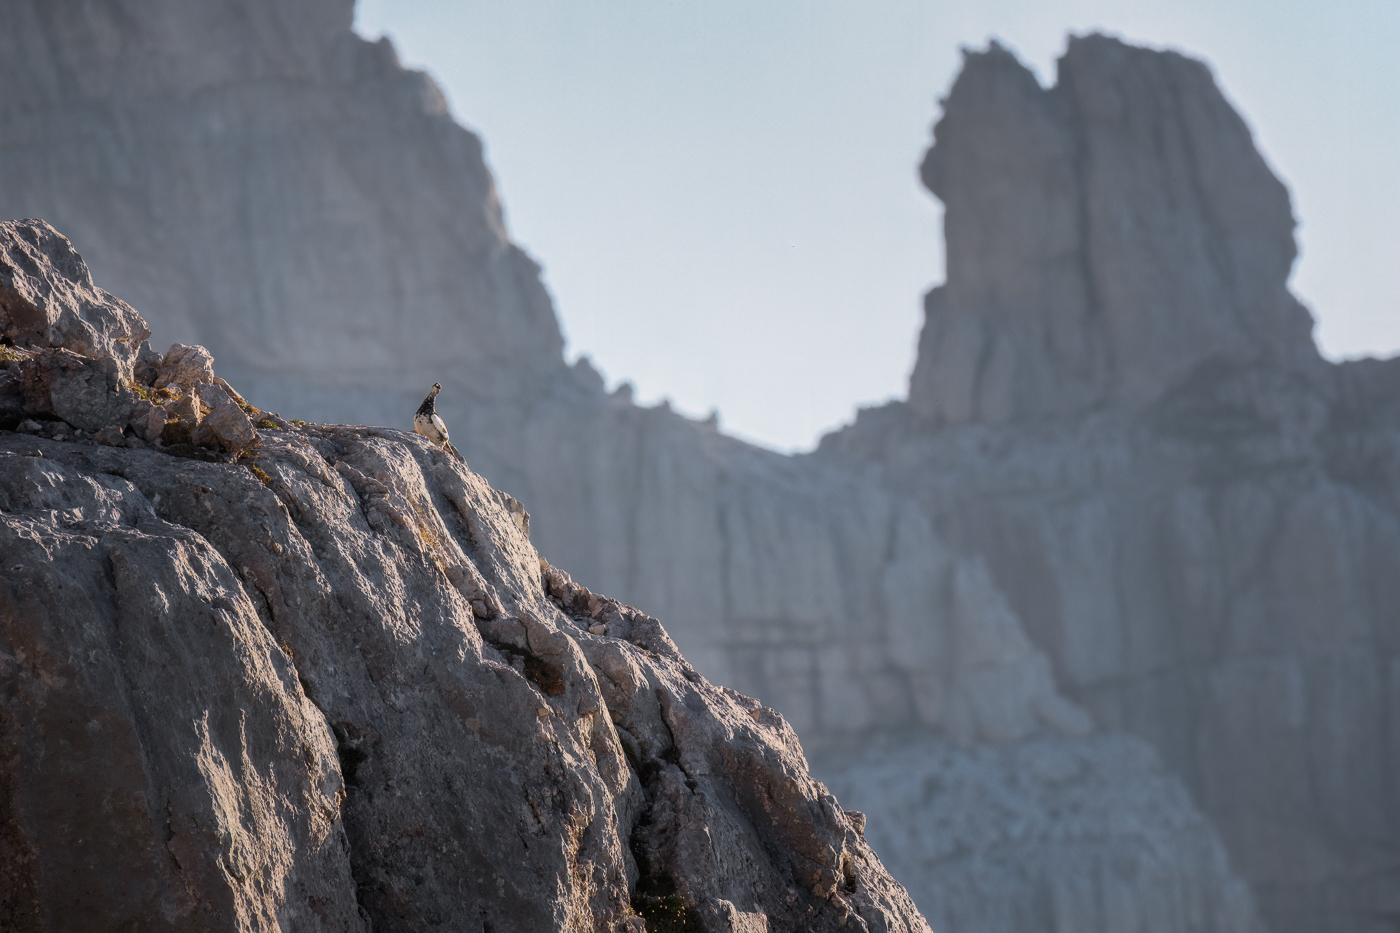 Fra le guglie rocciose delle Alpi Giulie, svetta fiero un maschio di pernice bianca (Lagopus muta) in veste estiva. Alpi Giulie, Italia.